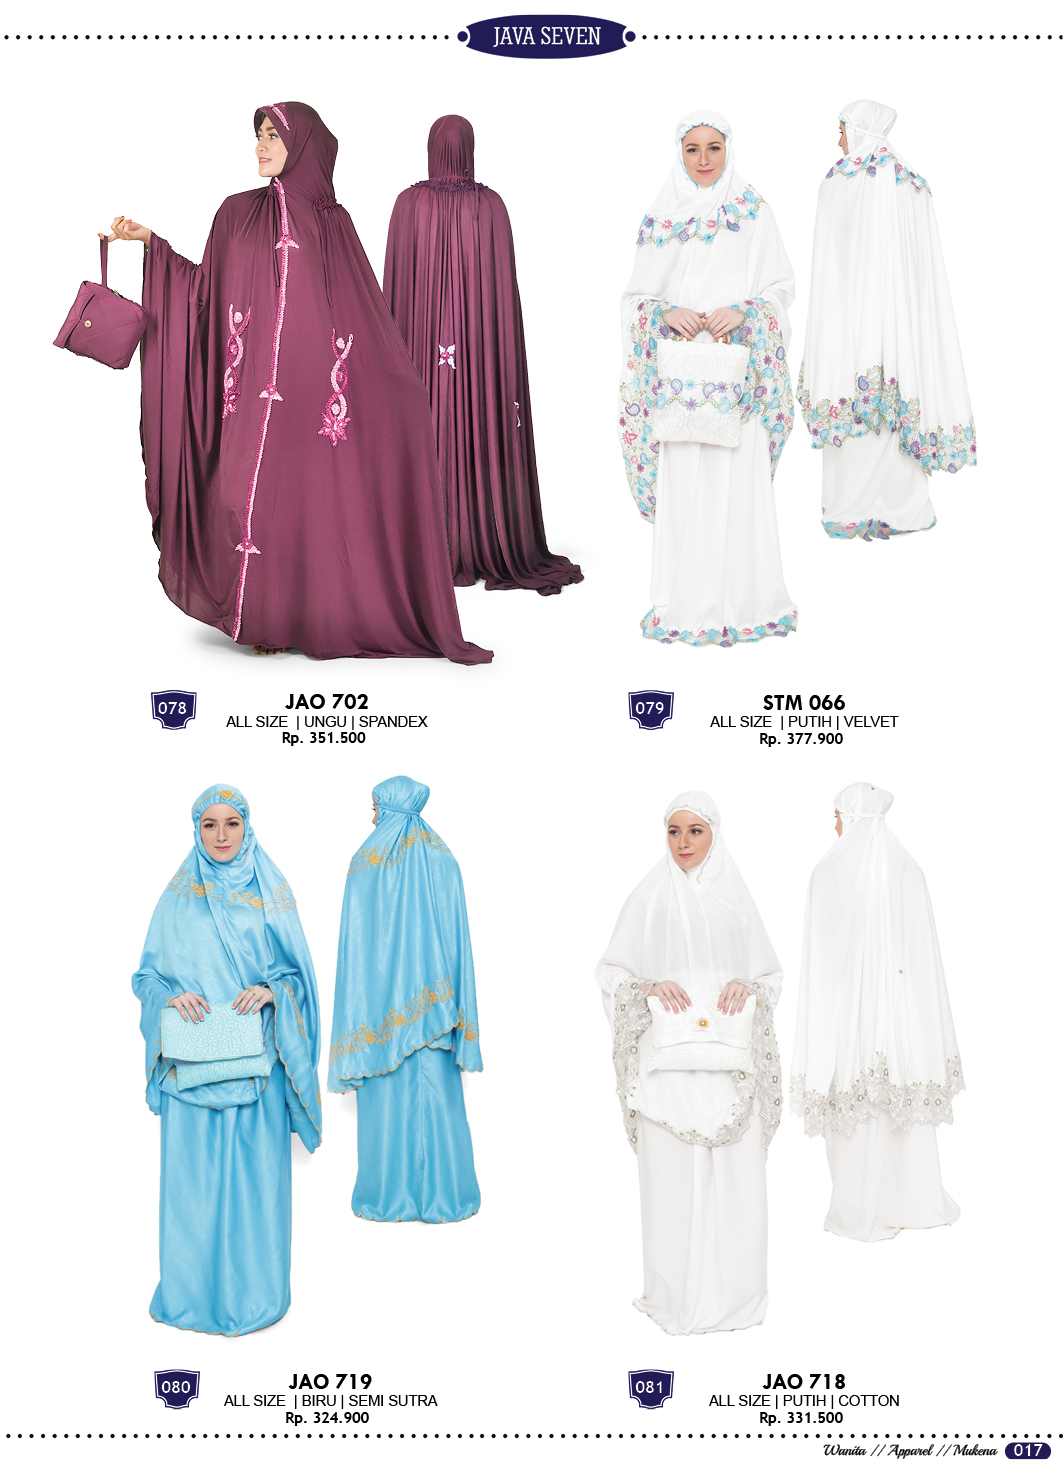 Katalog Terbaru Java Seven 2019 2019 Fashion Pria Wanita 